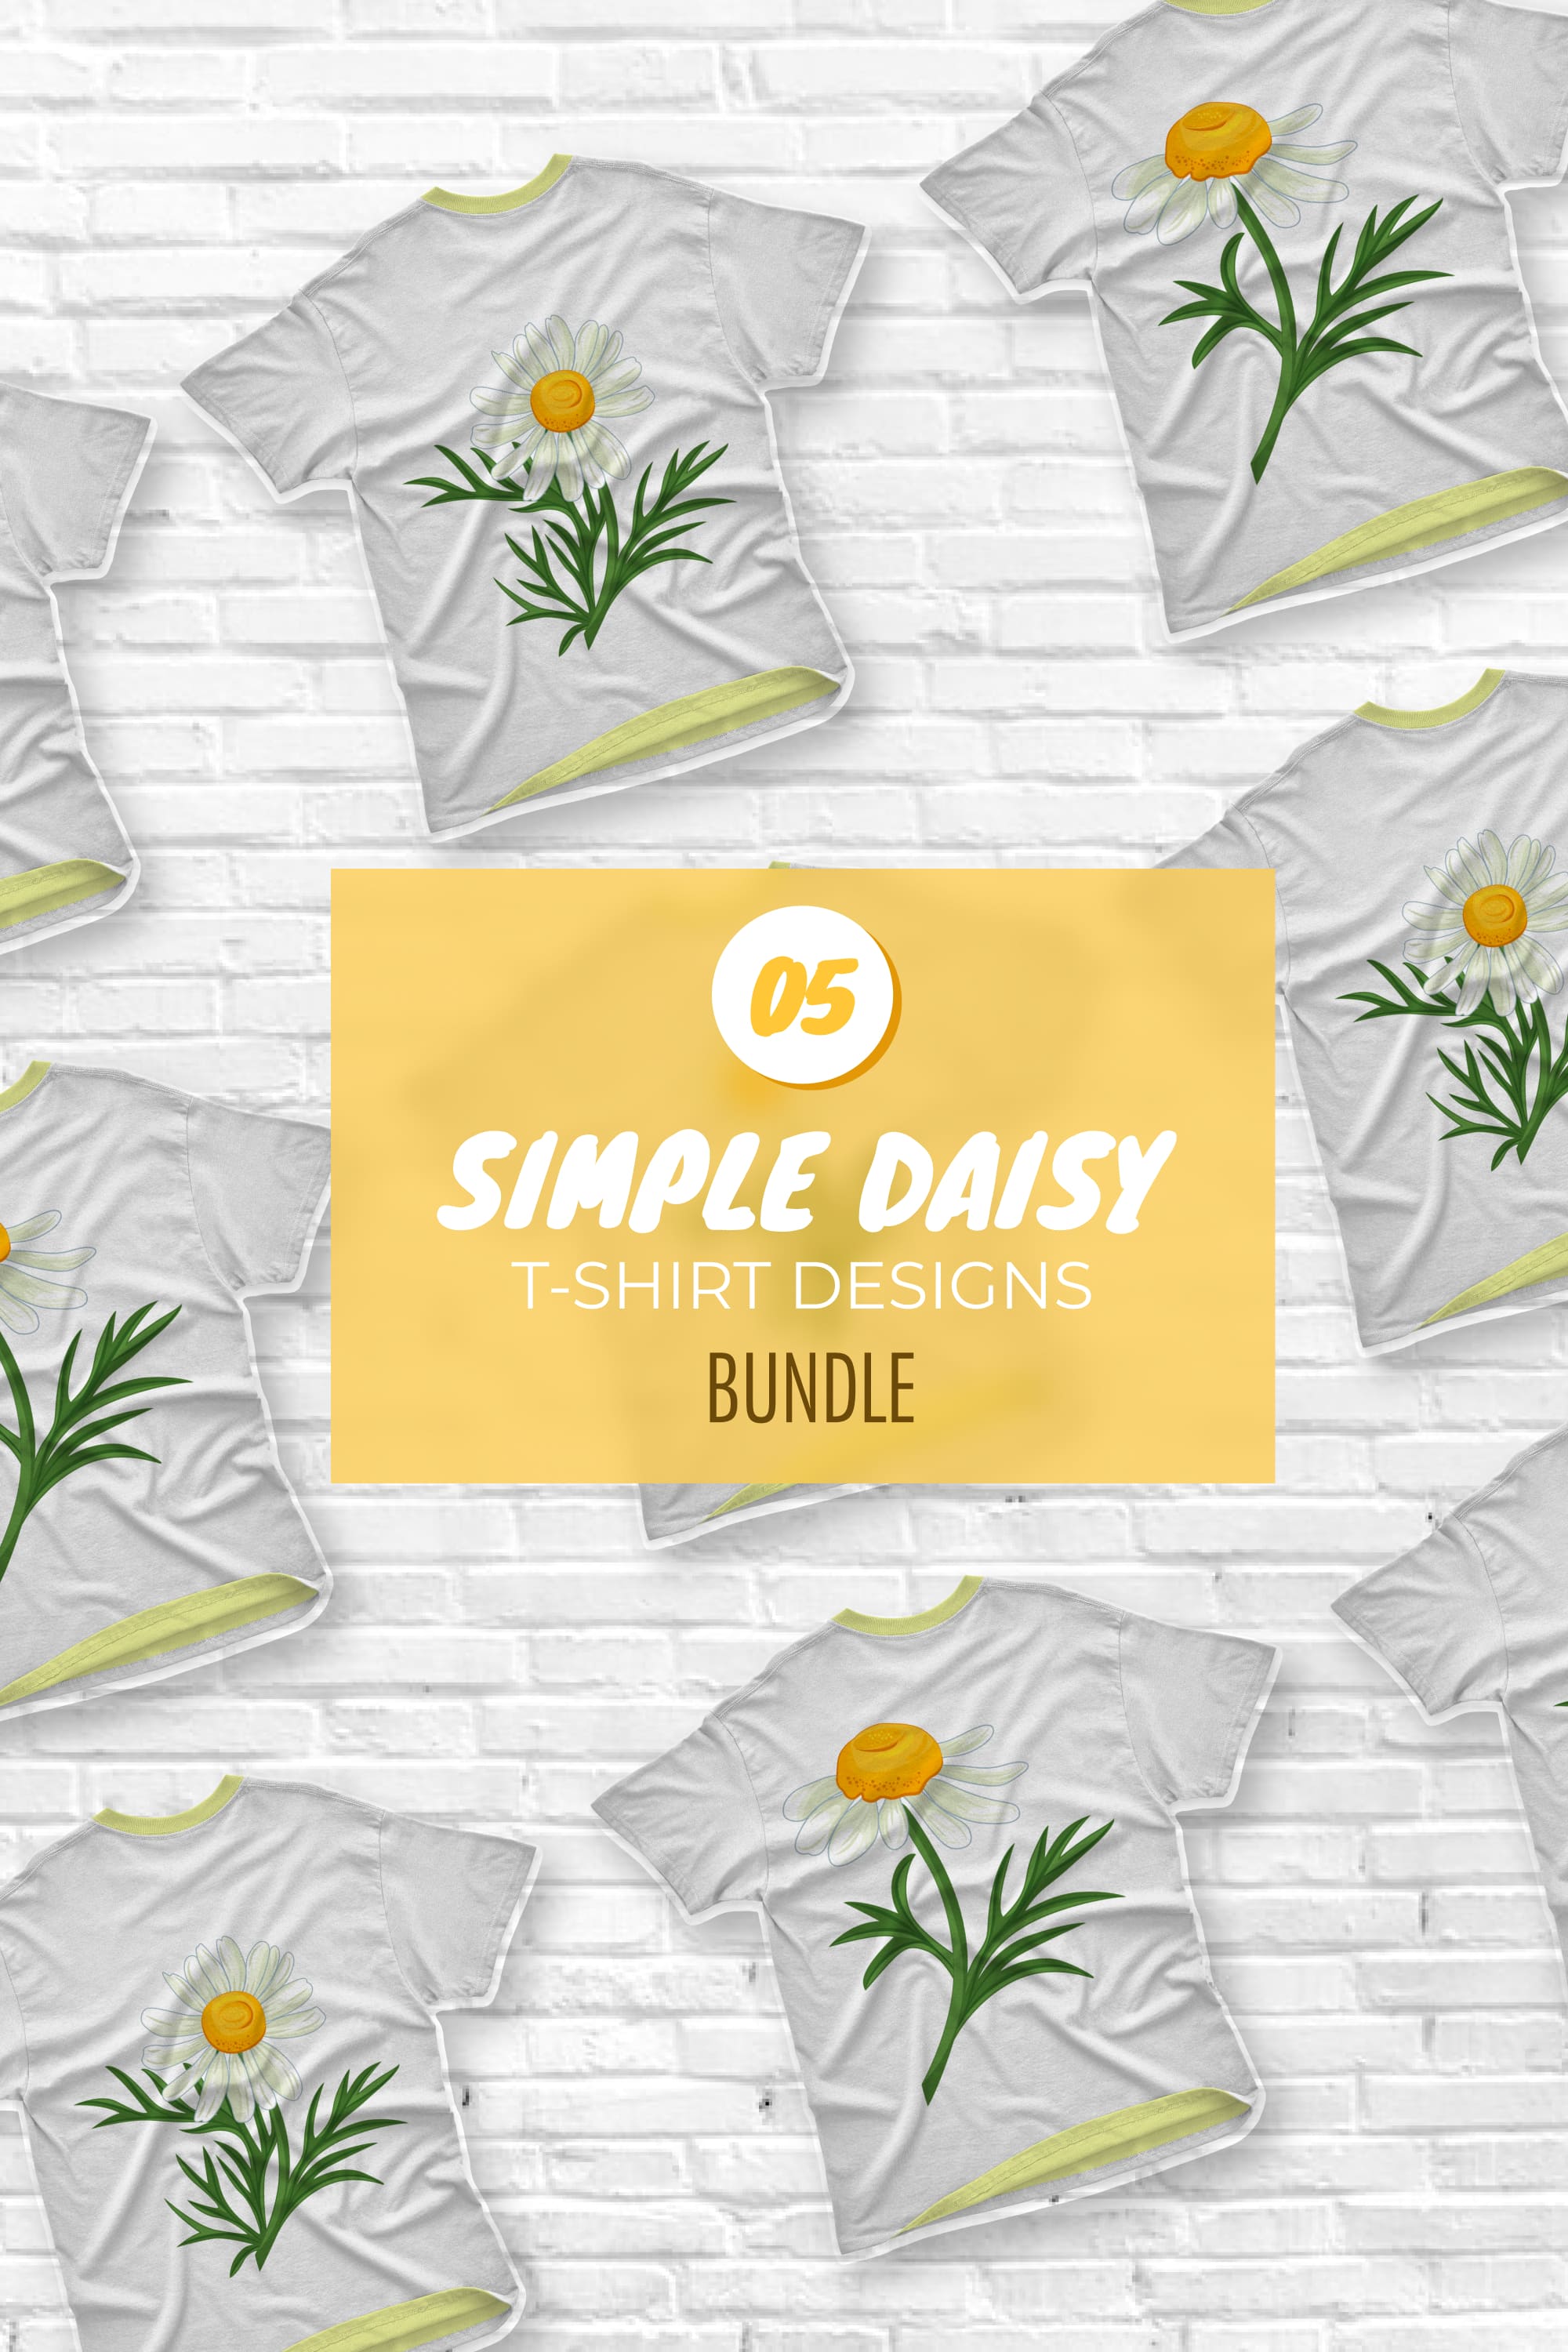 Simple Daisy T-shirt Designs Bundle - pinterest image preview.